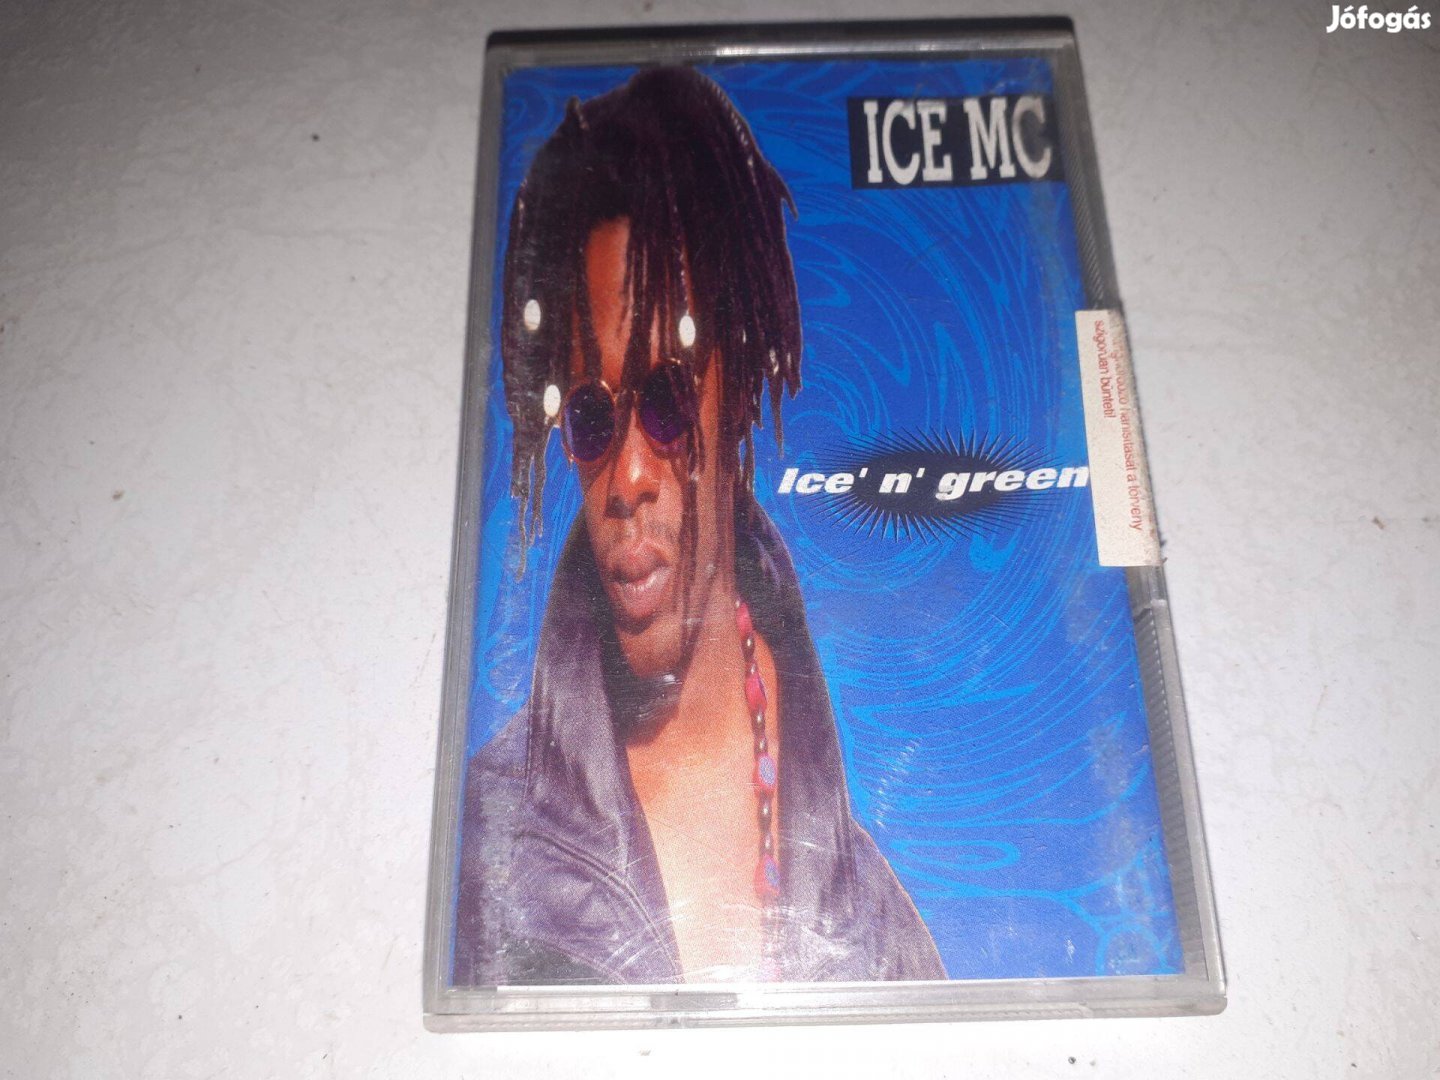 Ice MC - Ice' n' green műsoros magnó kazetta, MC